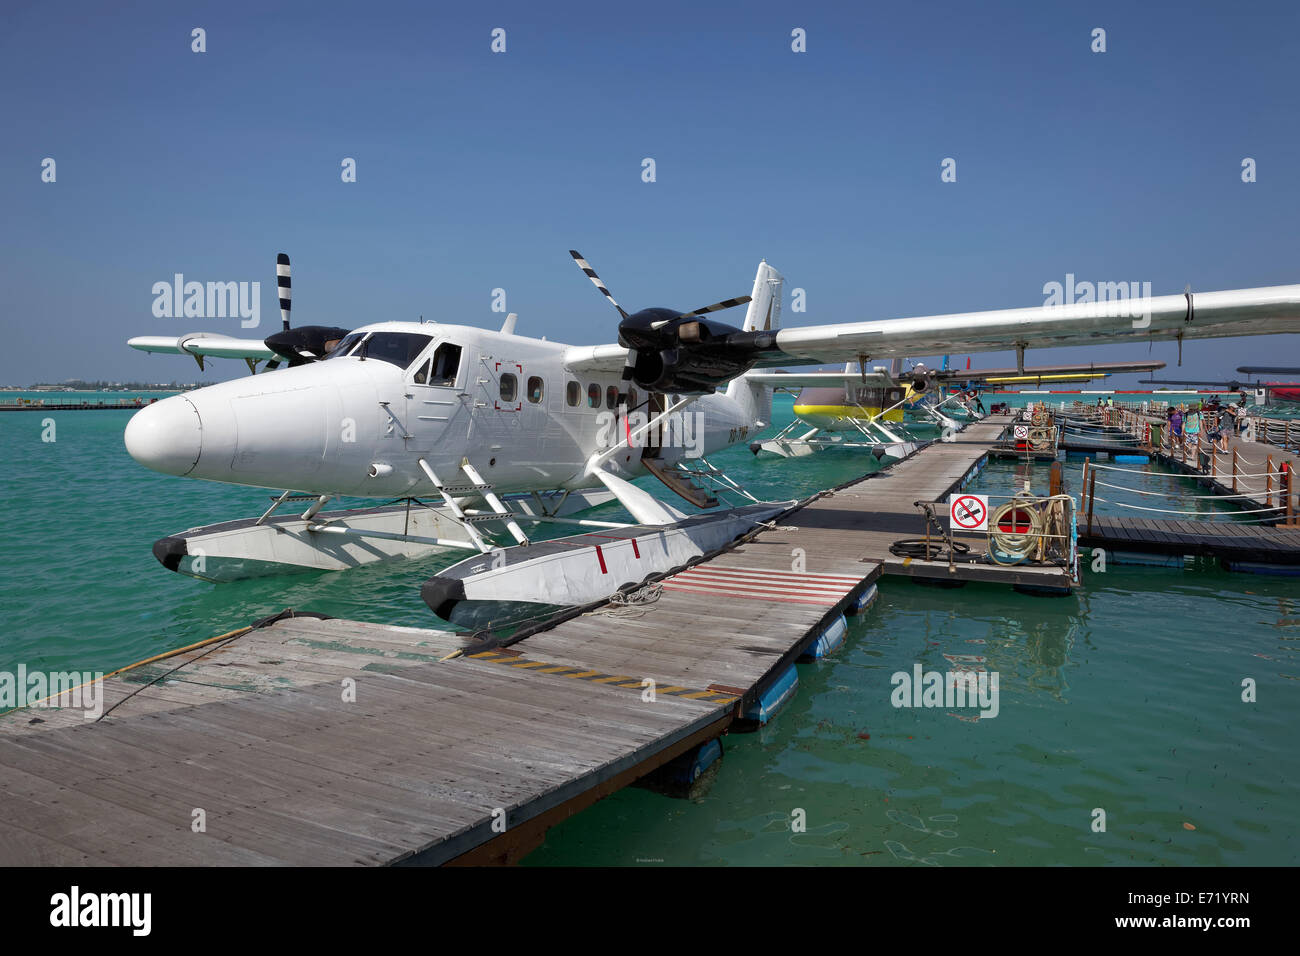 L'aquaplanage, De Havilland Canada DHC-6 Twin Otter 300, amarré au ponton, l'aéroport international de Malé, Maldives, Hulhulé Banque D'Images